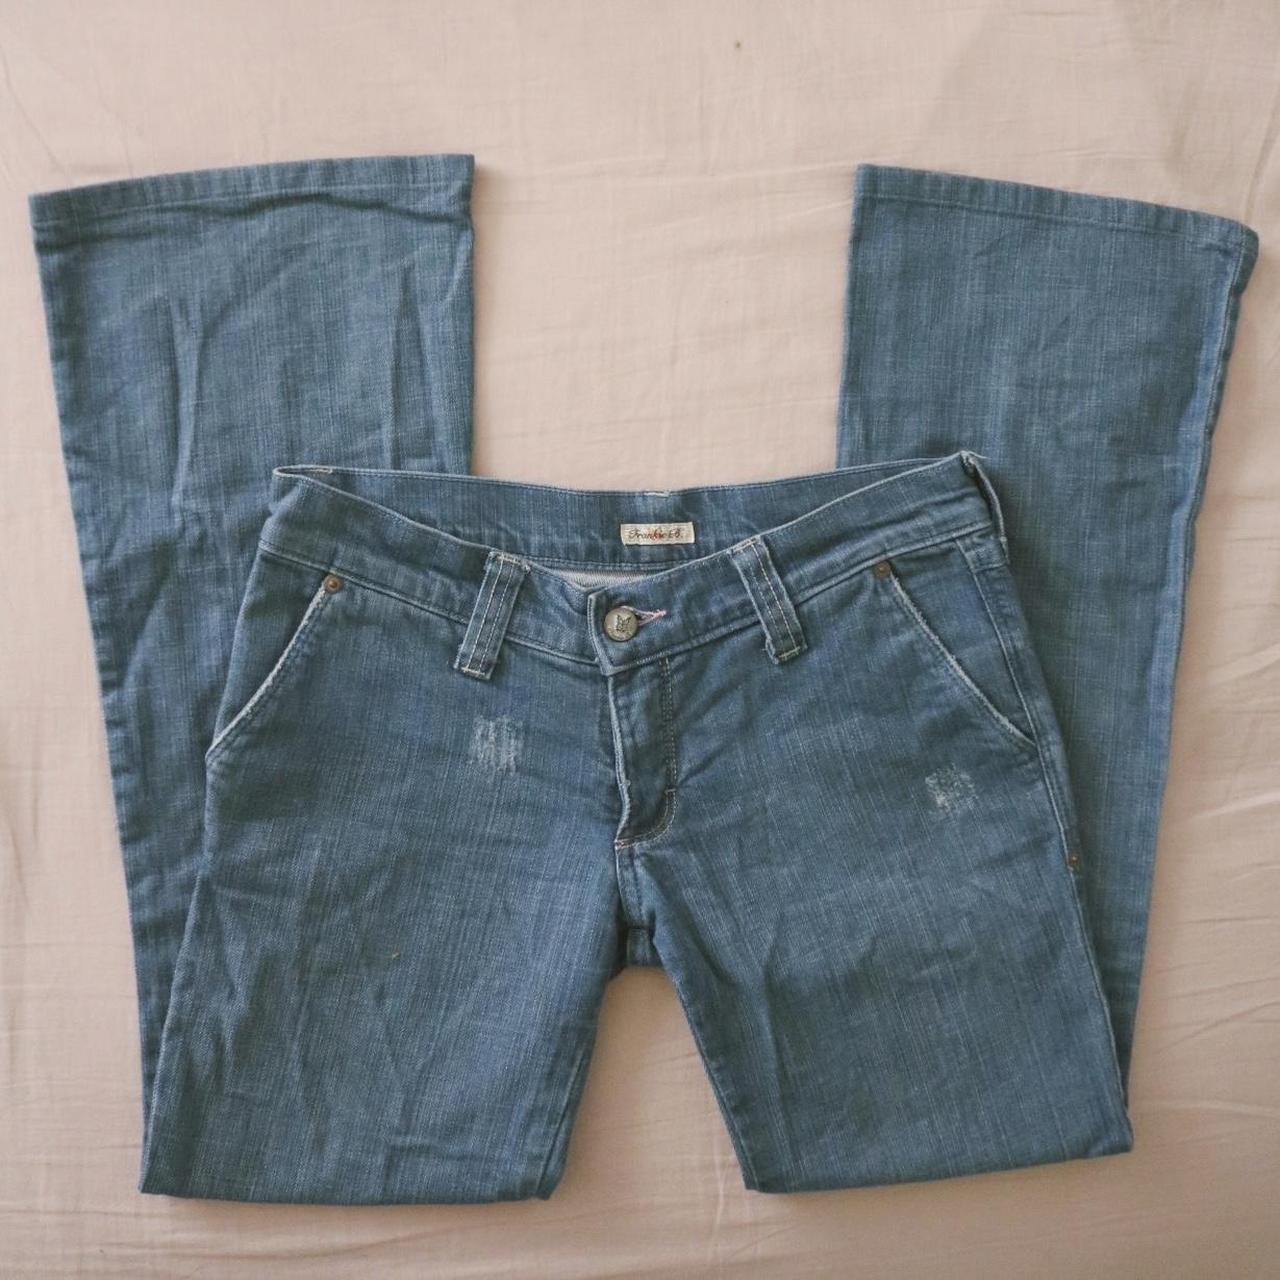 Women's Jeans | Depop